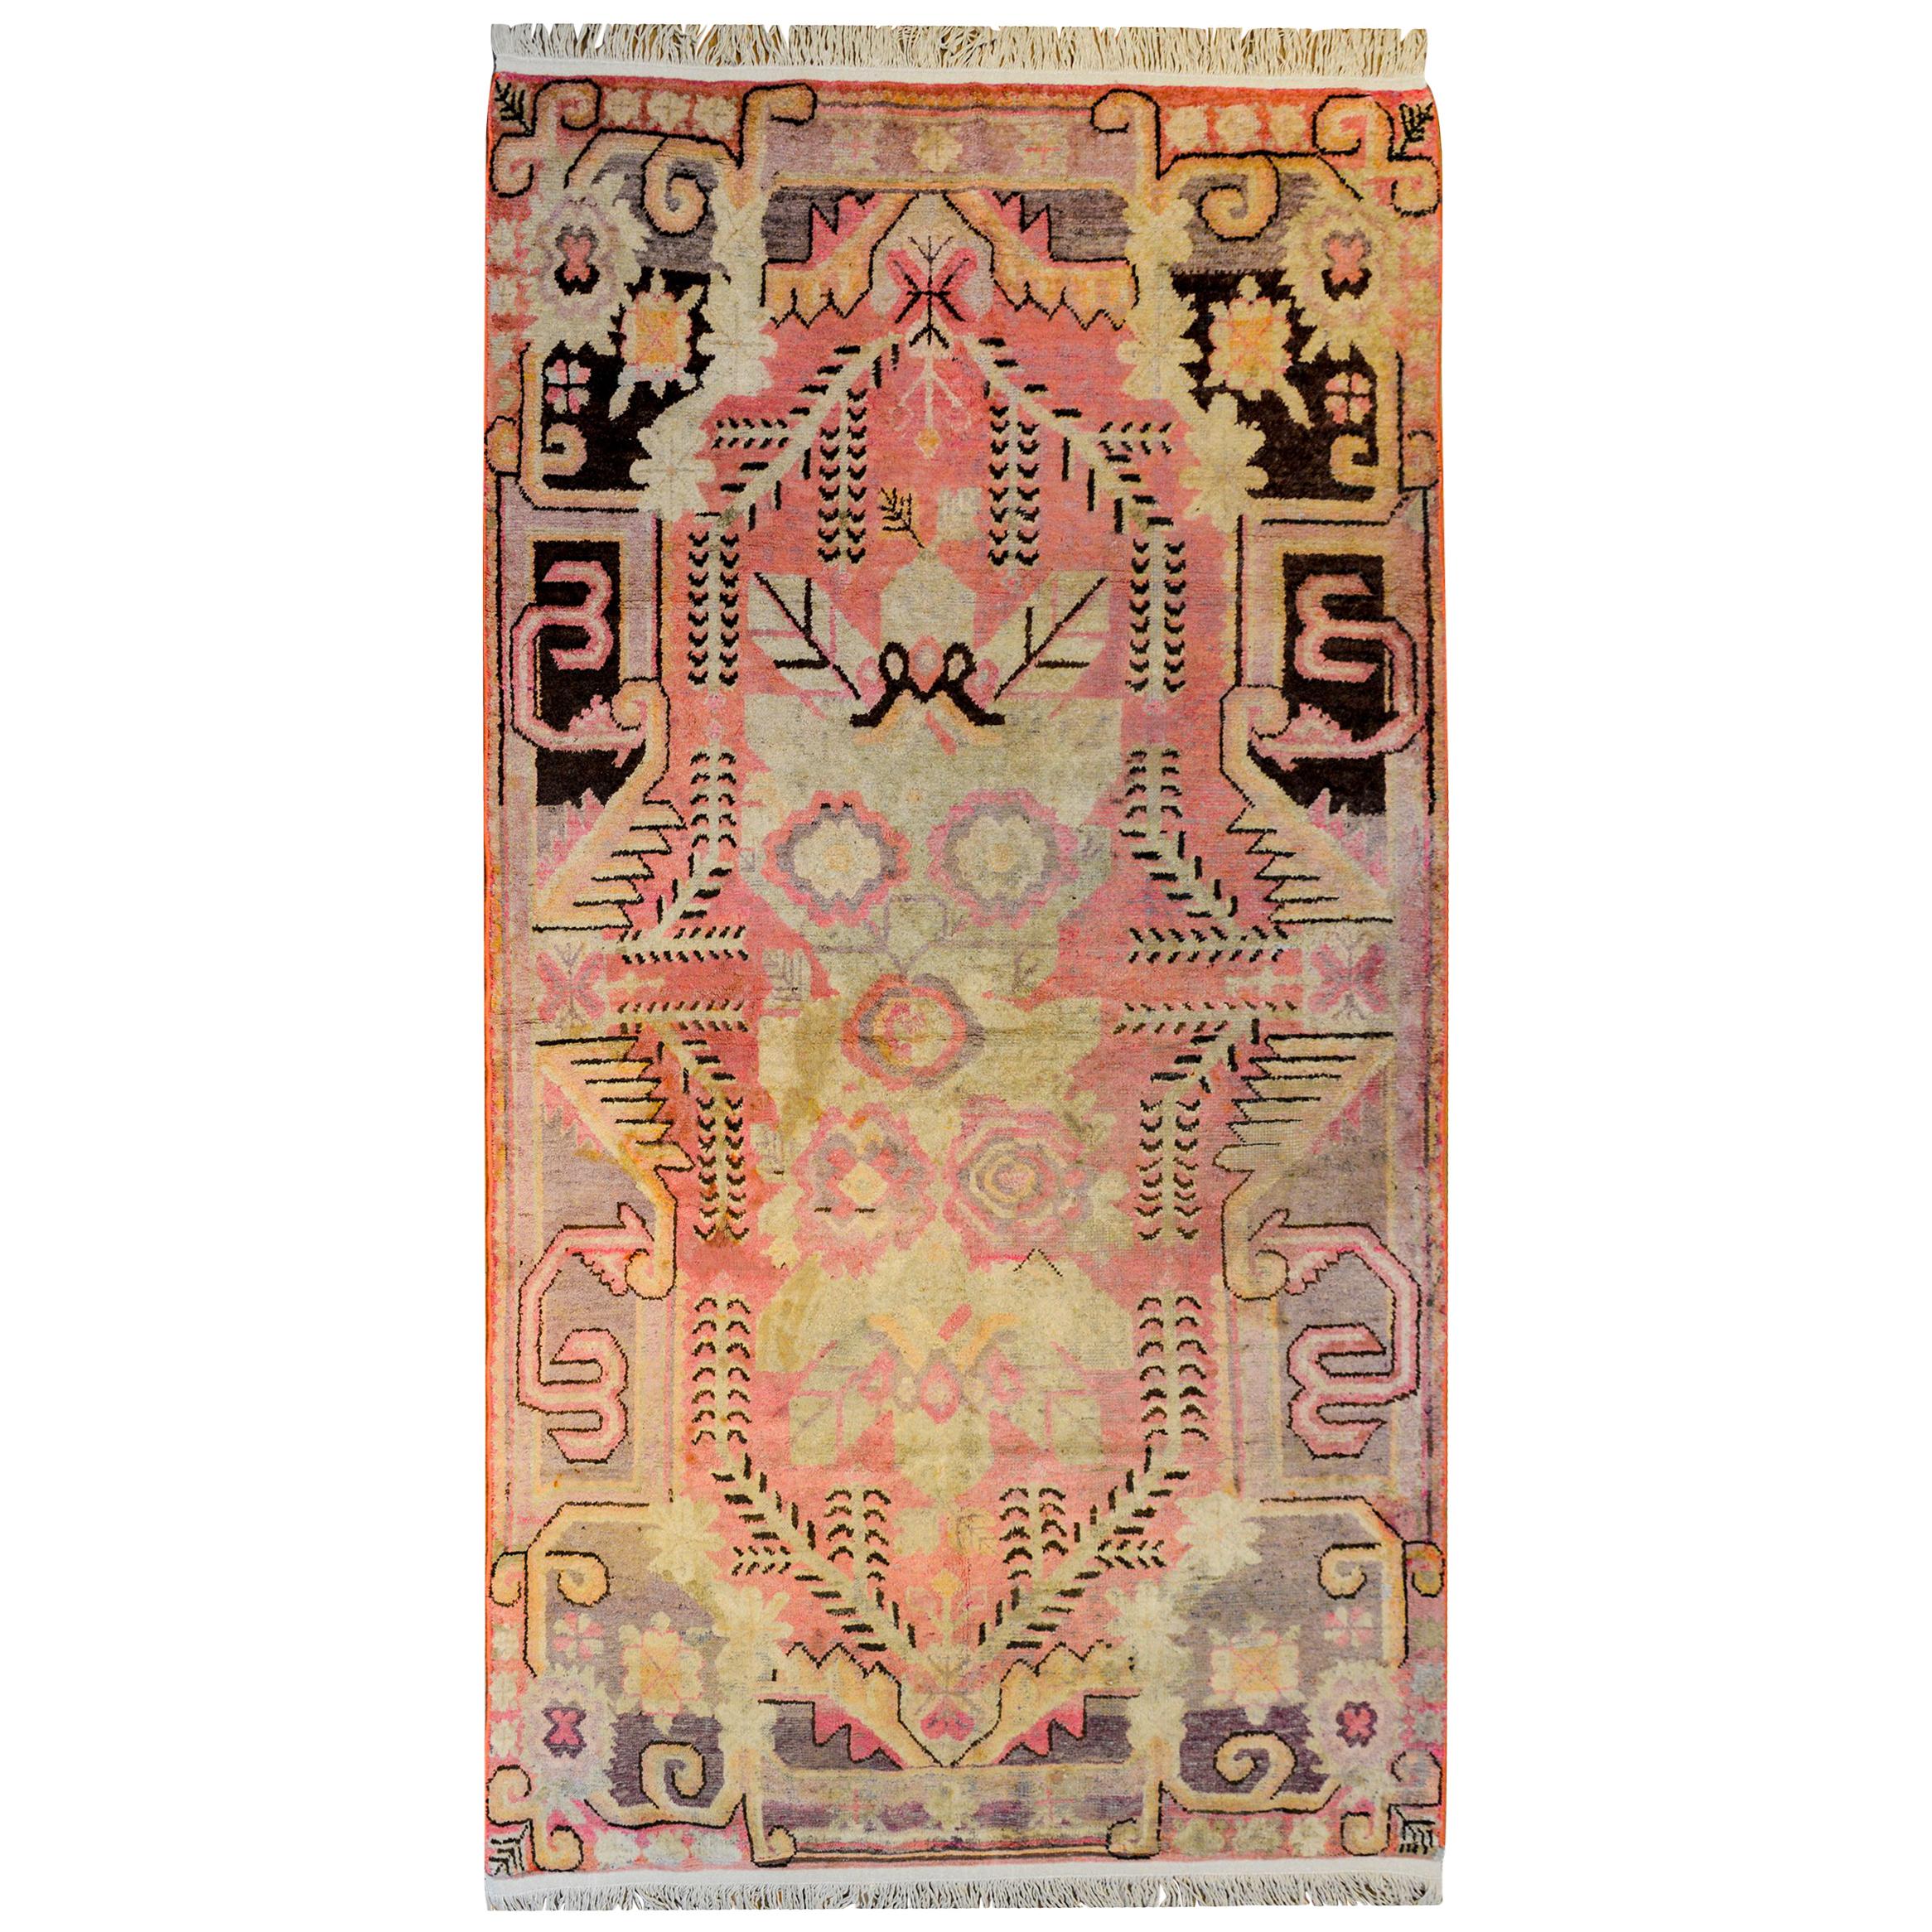 Wunderschöner Teppich aus dem frühen 20. Jahrhundert aus Khotan